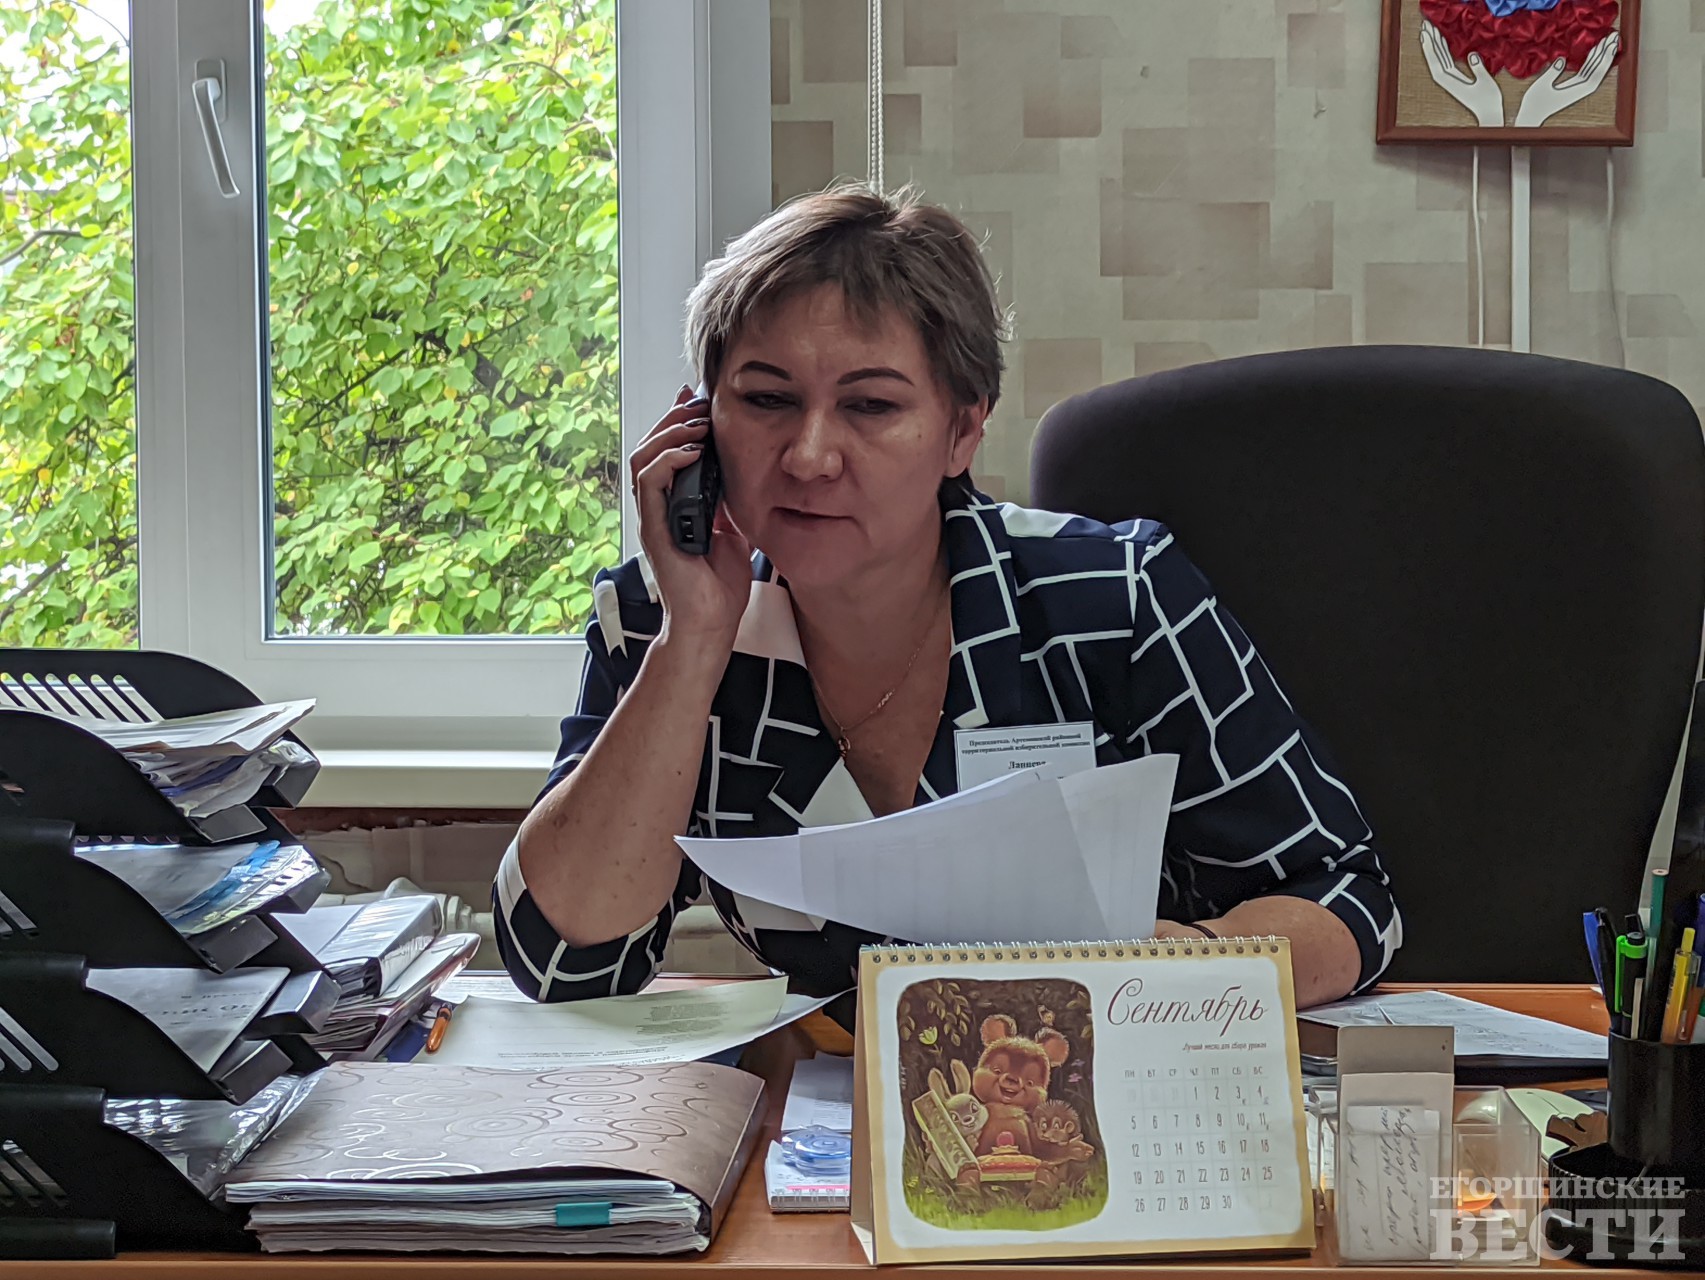 Ирина Ланцева, председатель Артемовской ТИК, консультирует по телефону 2-52-95. Фото: Михаил Дудин, 